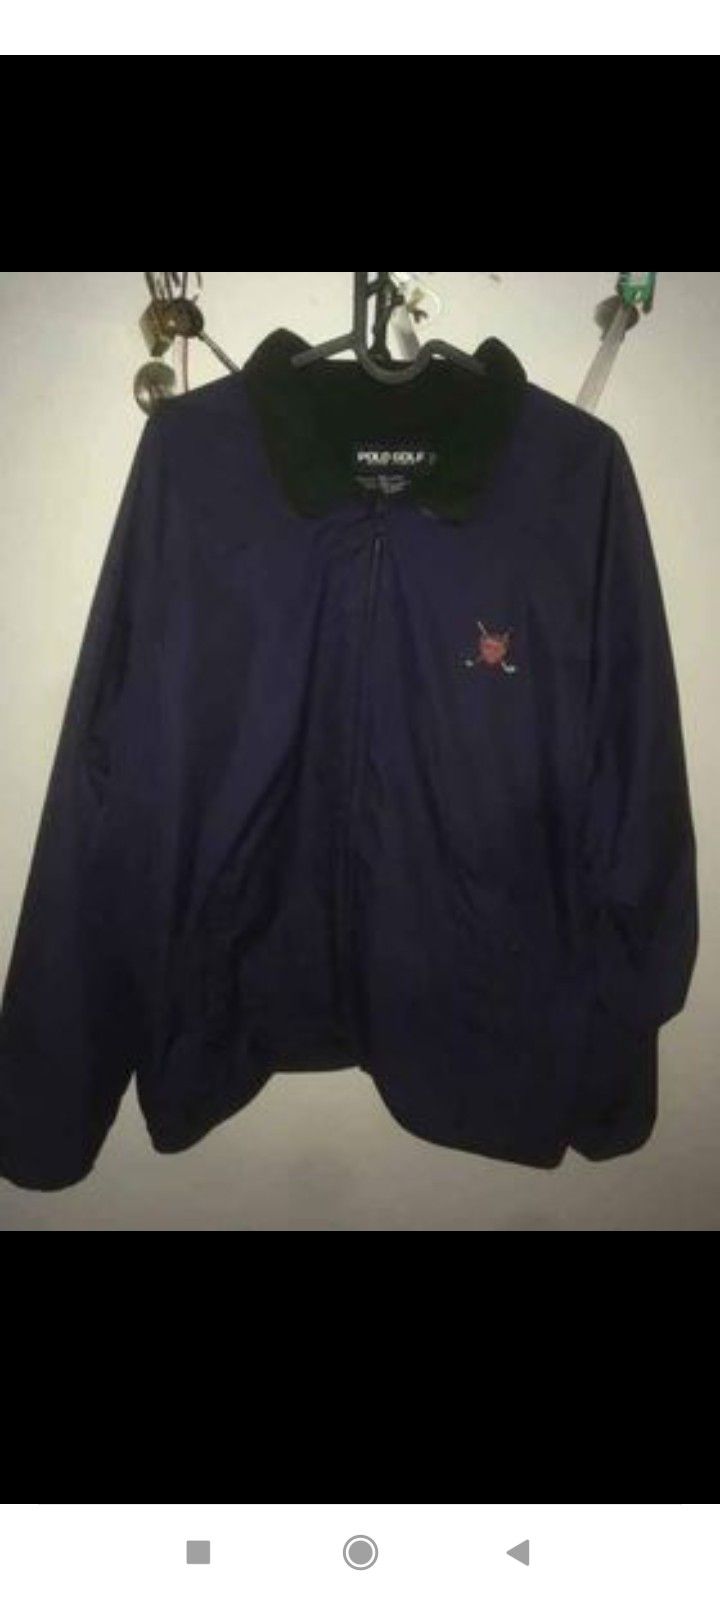 Polo Ralph Lauren golf jacket